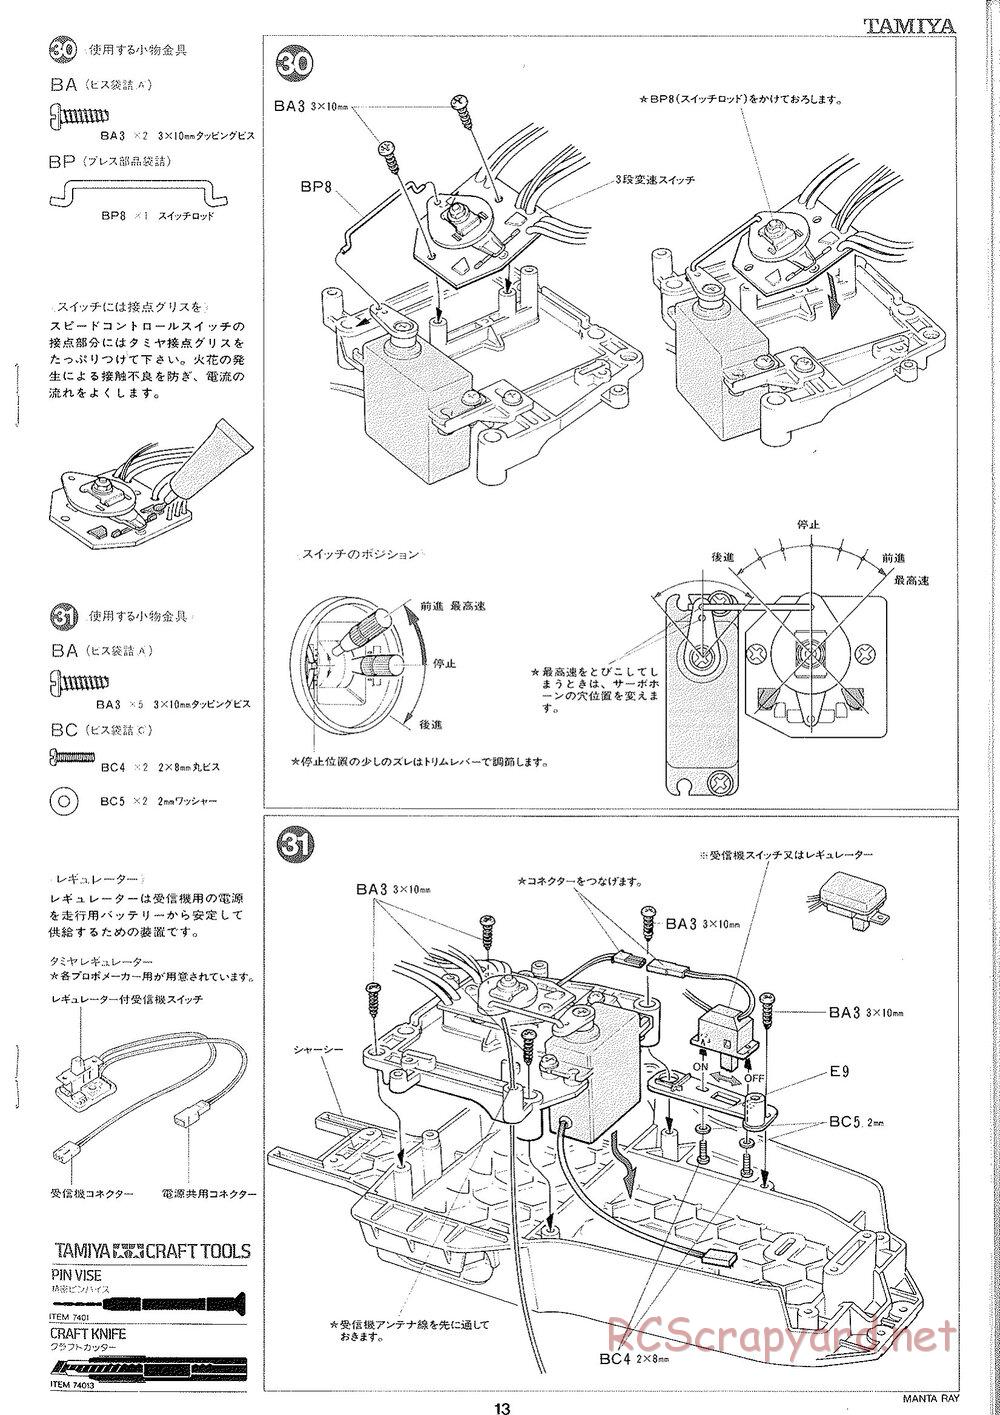 Tamiya - Manta Ray 2005 - DF-01 Chassis - Manual - Page 14